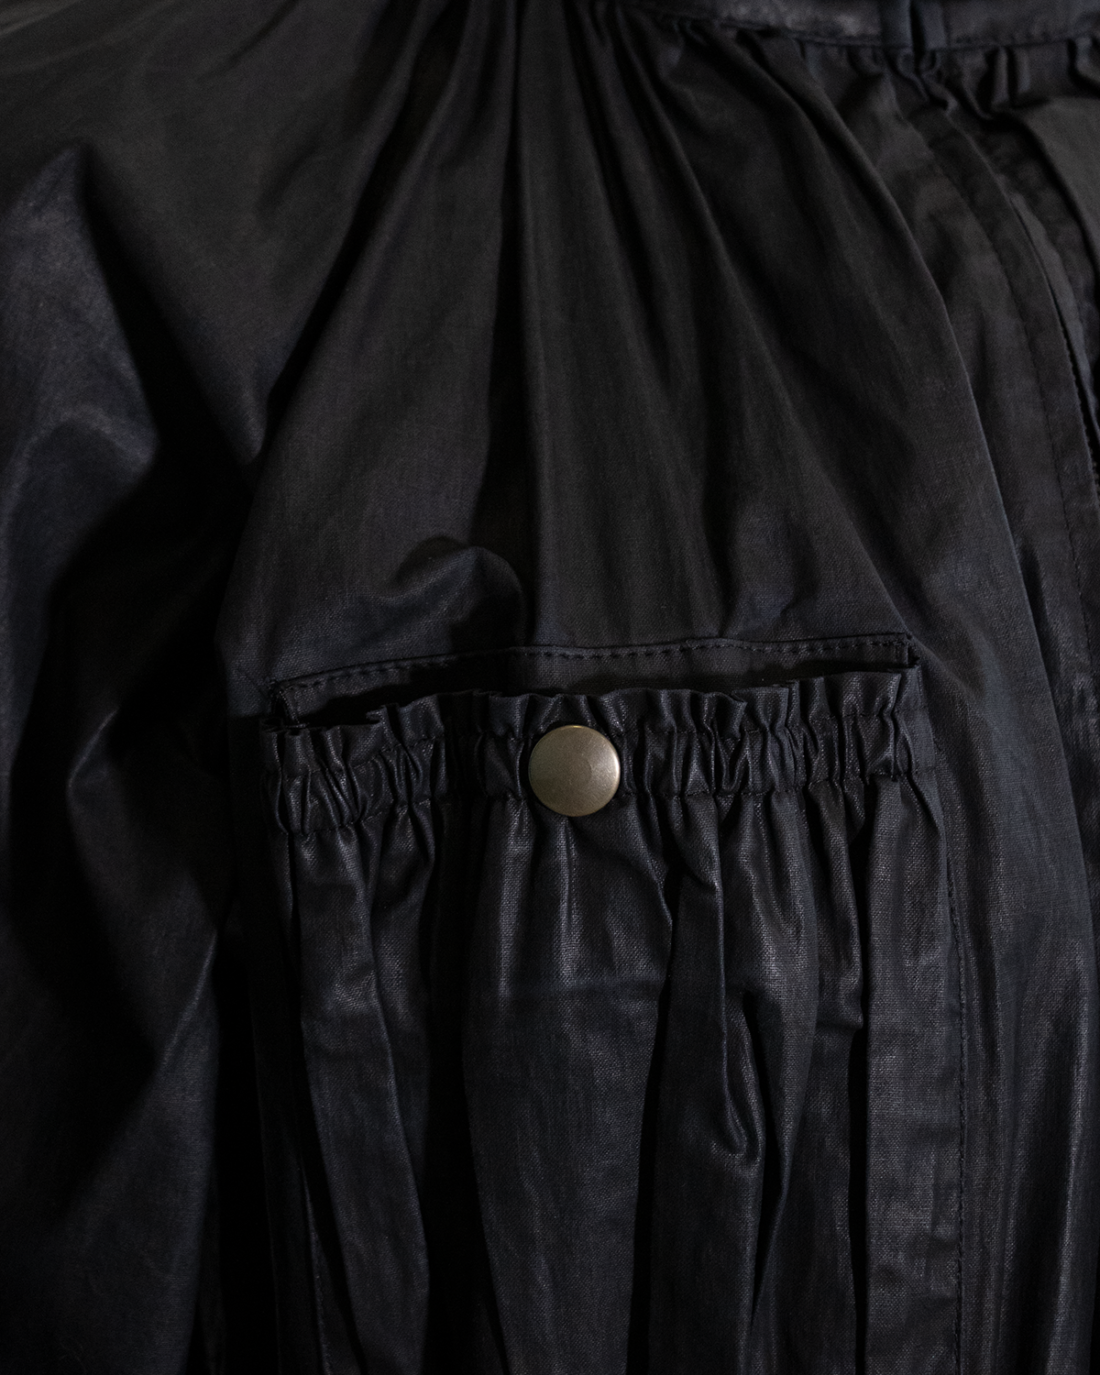 Jean Paul Gaultier Black Jacket from 2000s